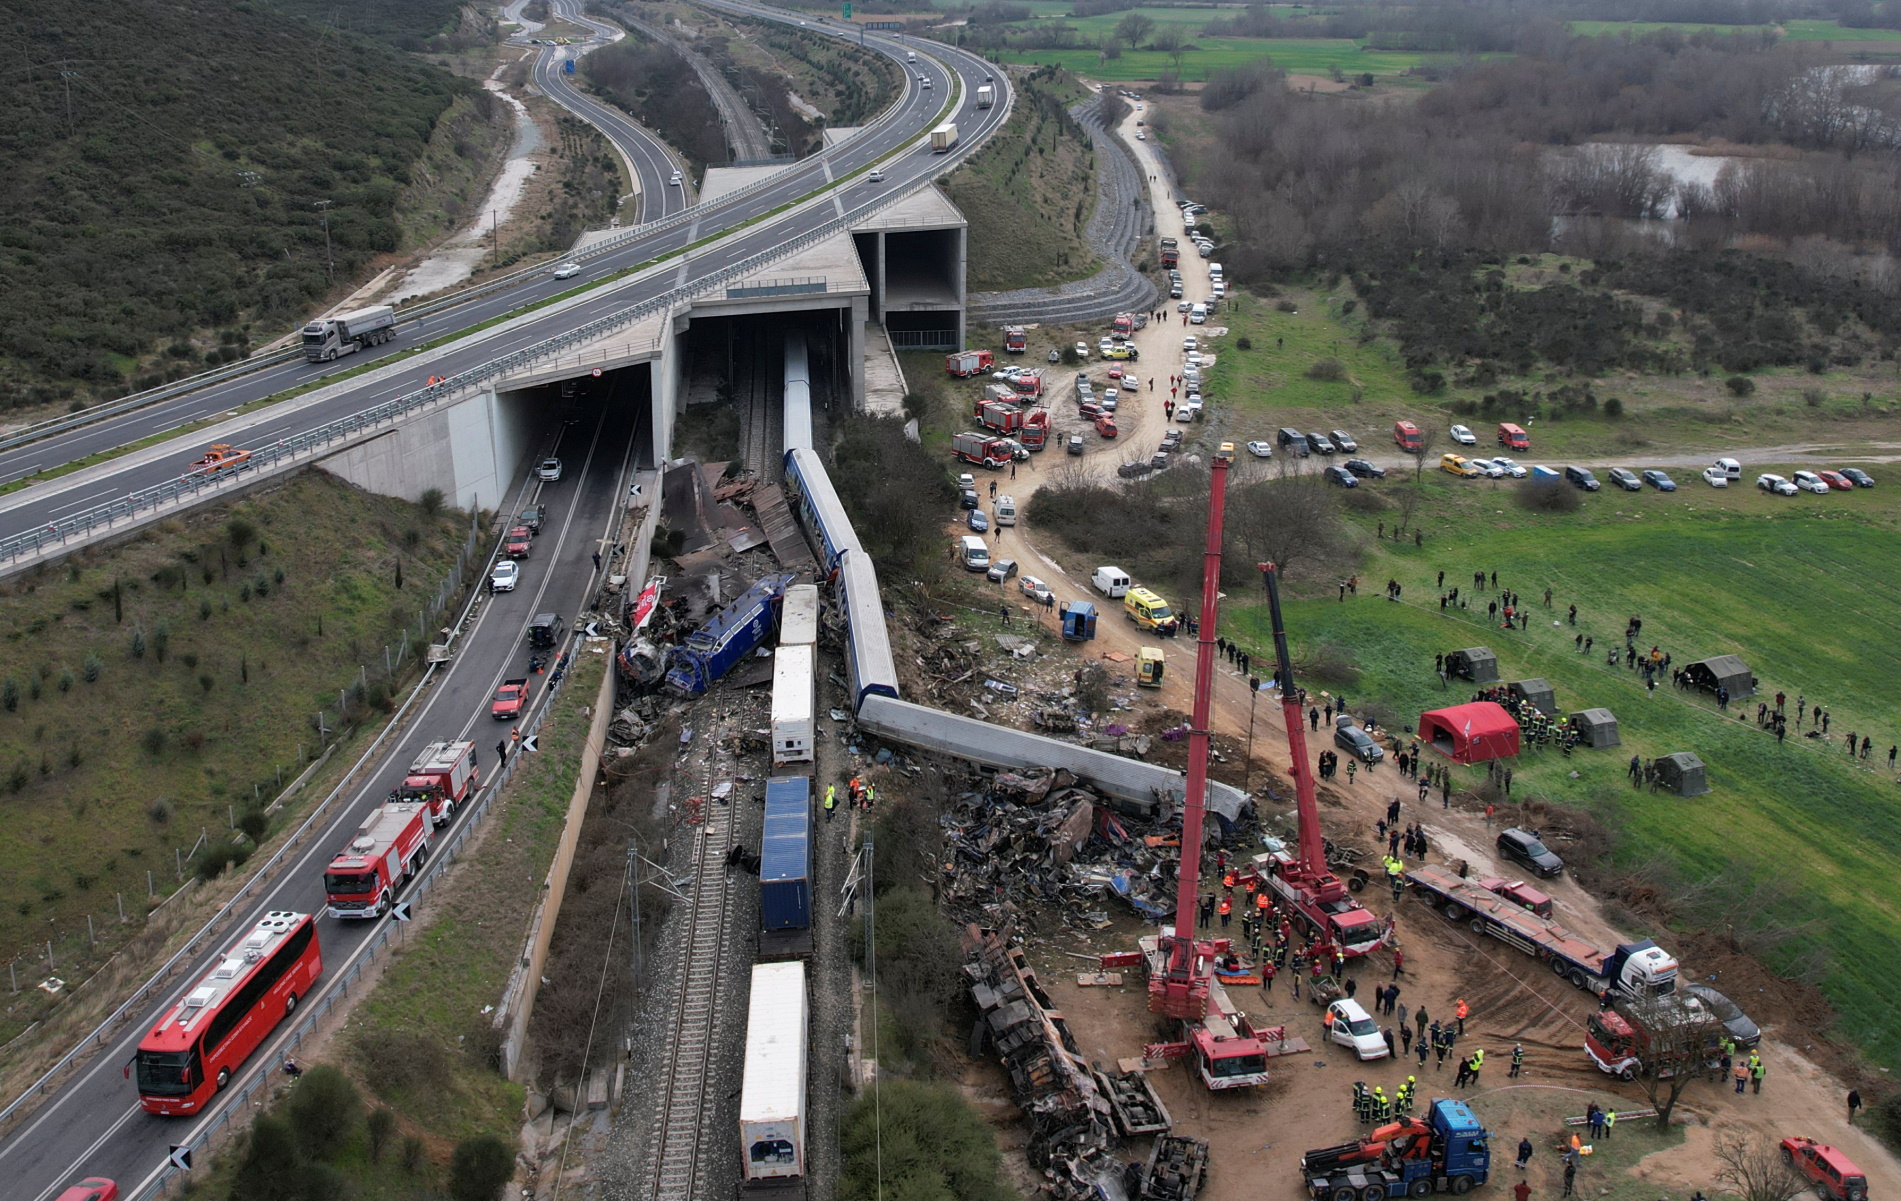 Σύγκρουση τρένων στα Τέμπη: «Δεν θα υπήρχε κανείς επιζών αν συνέβαινε στα τούνελ» λέει ο Ευθύμιος Λέκκας